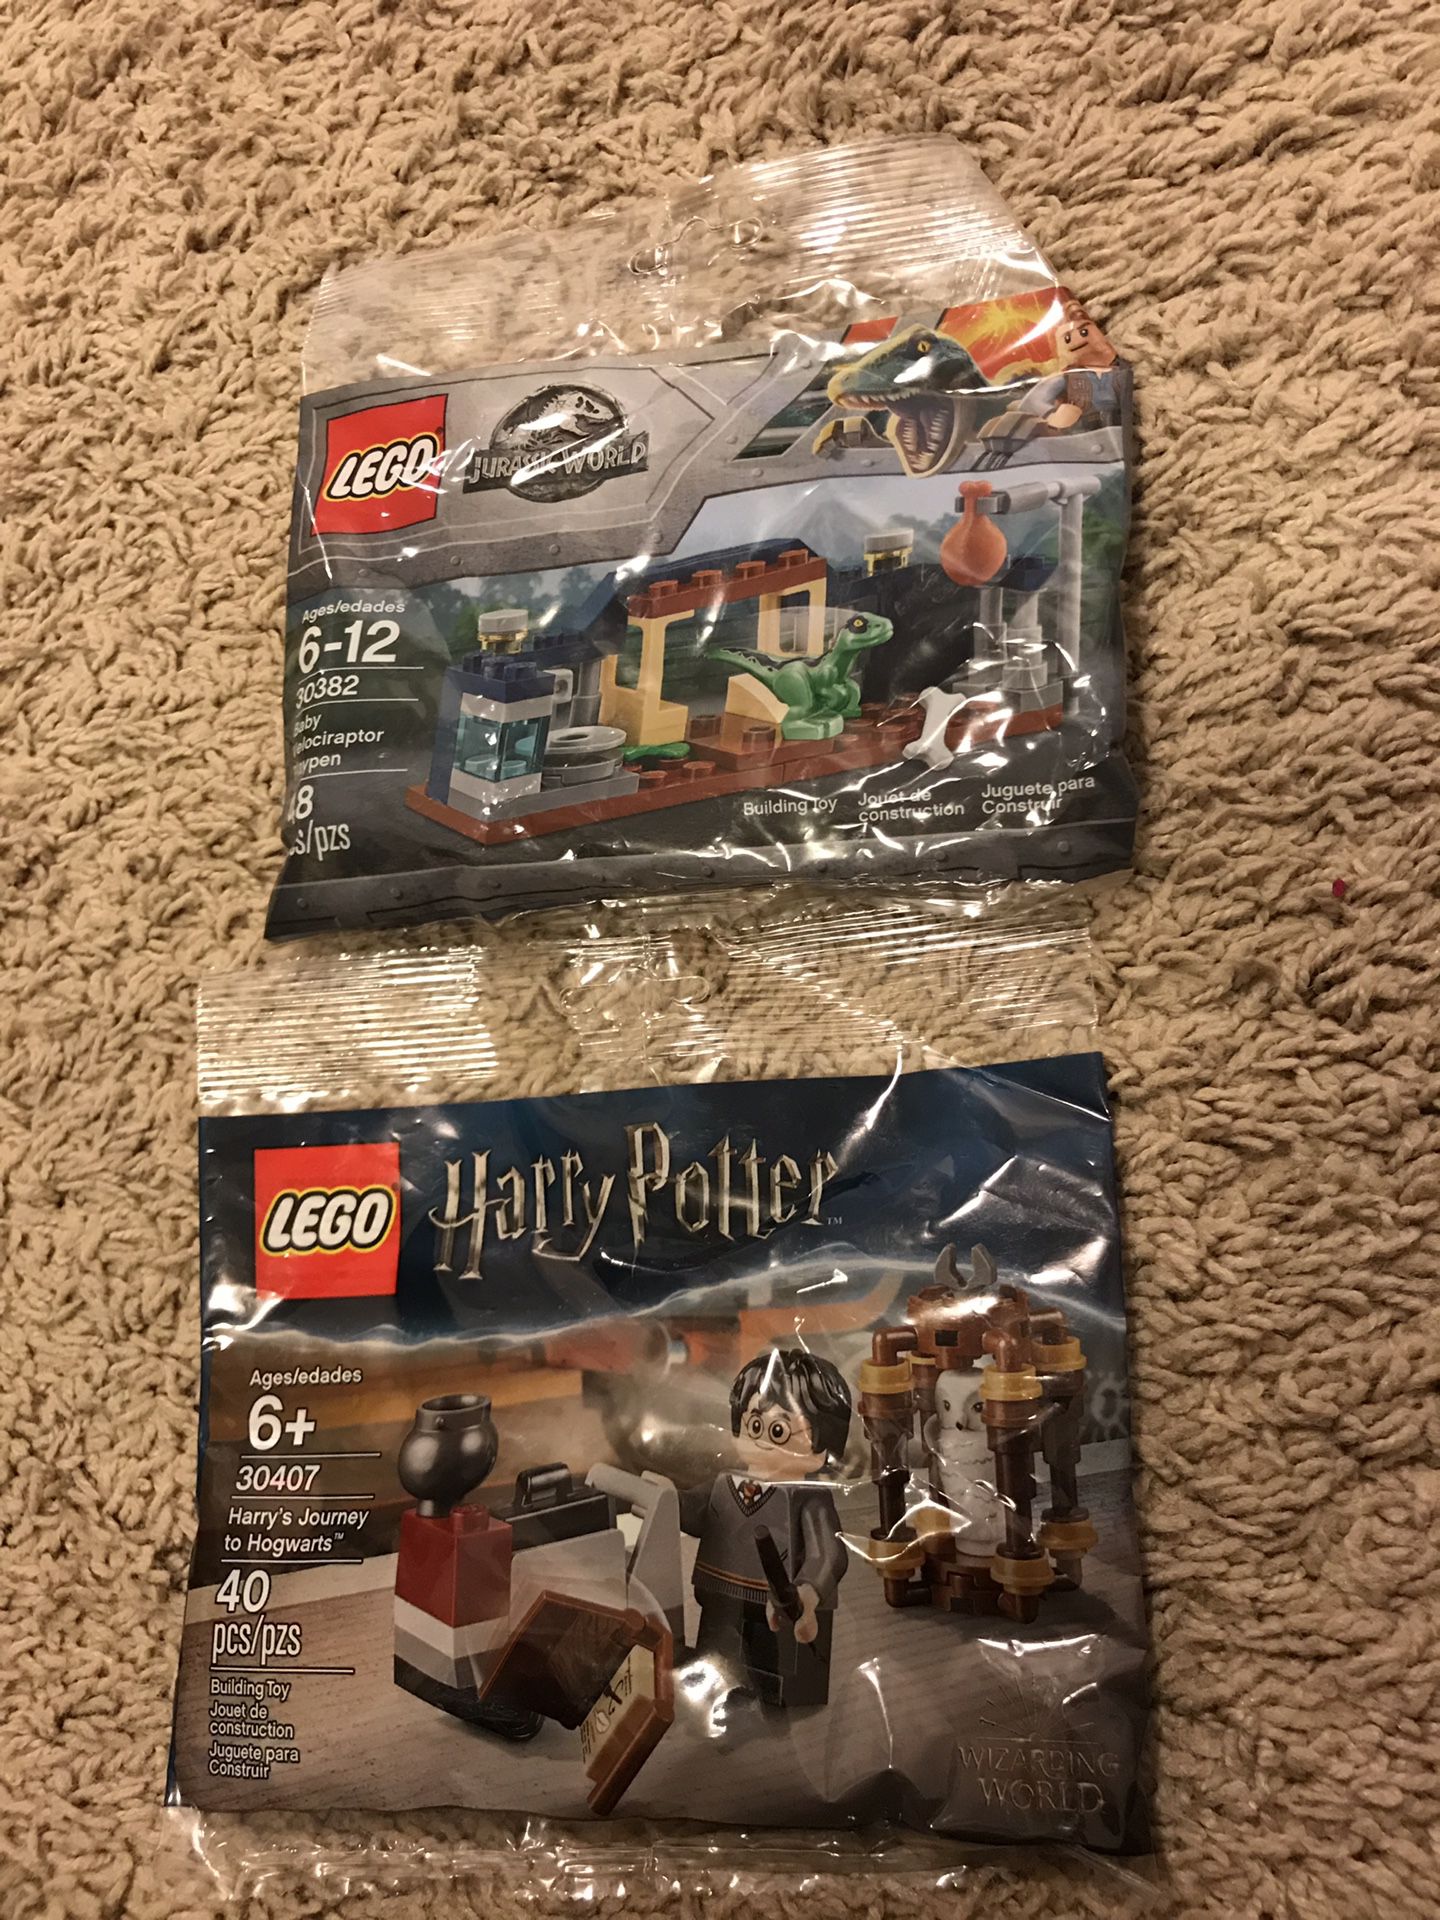 Lego 30382 Jurassic world + LEGO 30407 Harry Potter